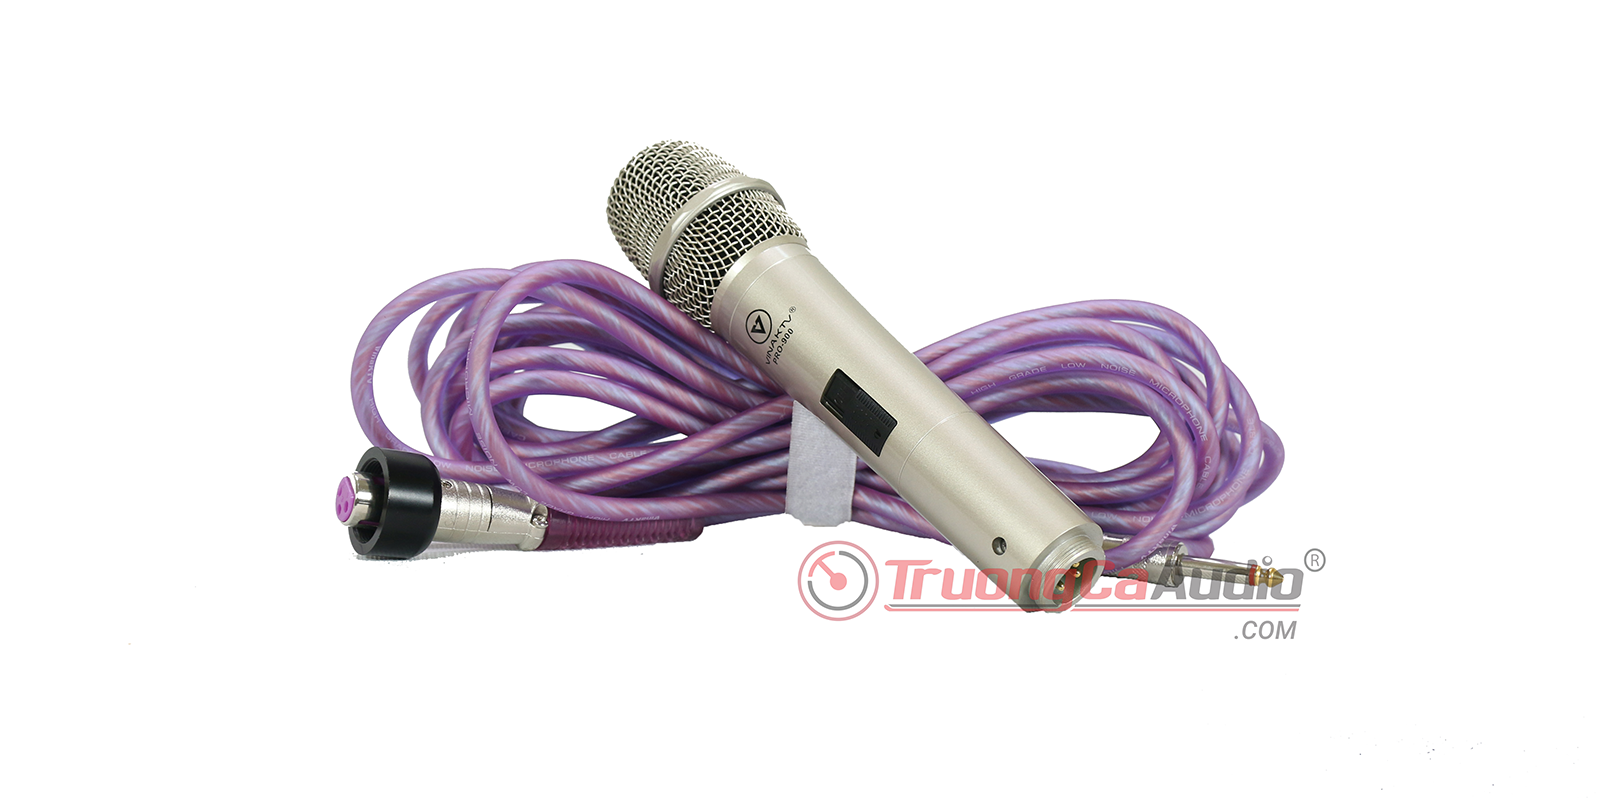 Micro pro 900 là dòng sản phẩm cao cấp, phù hợp với dàn karaoke gia đình cao cấp